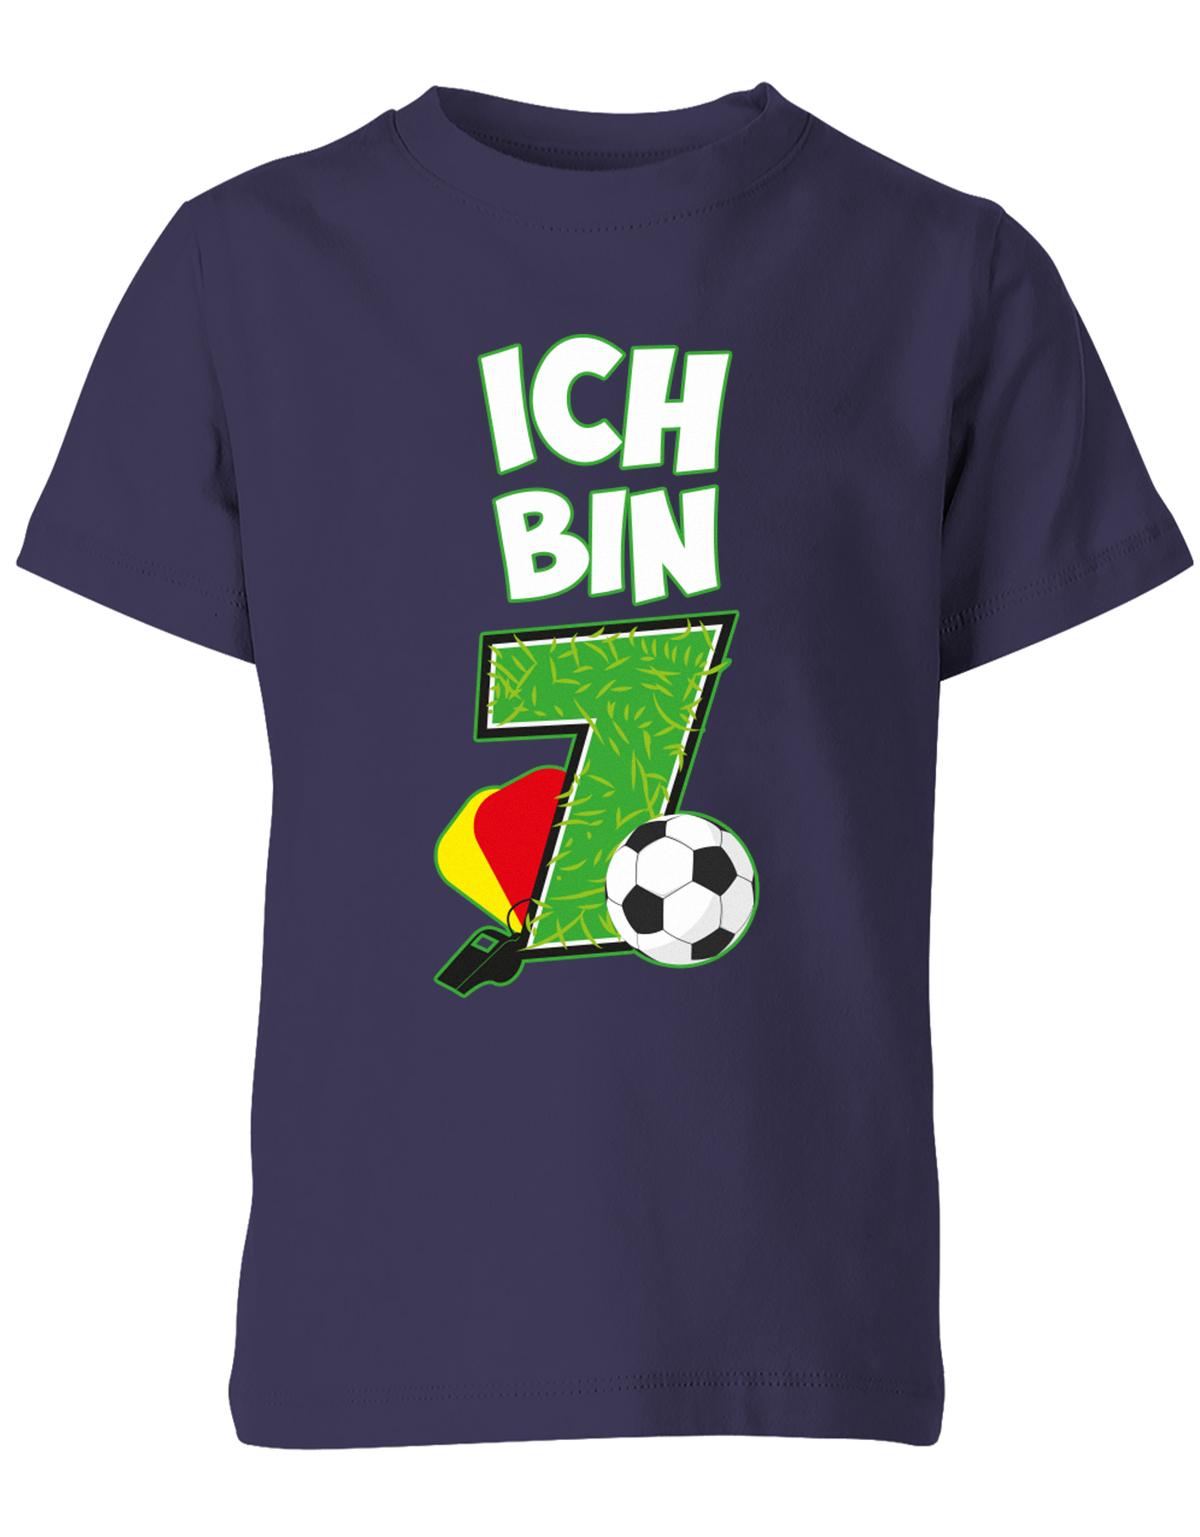 ich-bin-7-fussball-rote-gelbe-karte-geburtstag-fussballer-shirt-kinder-shirt-navy